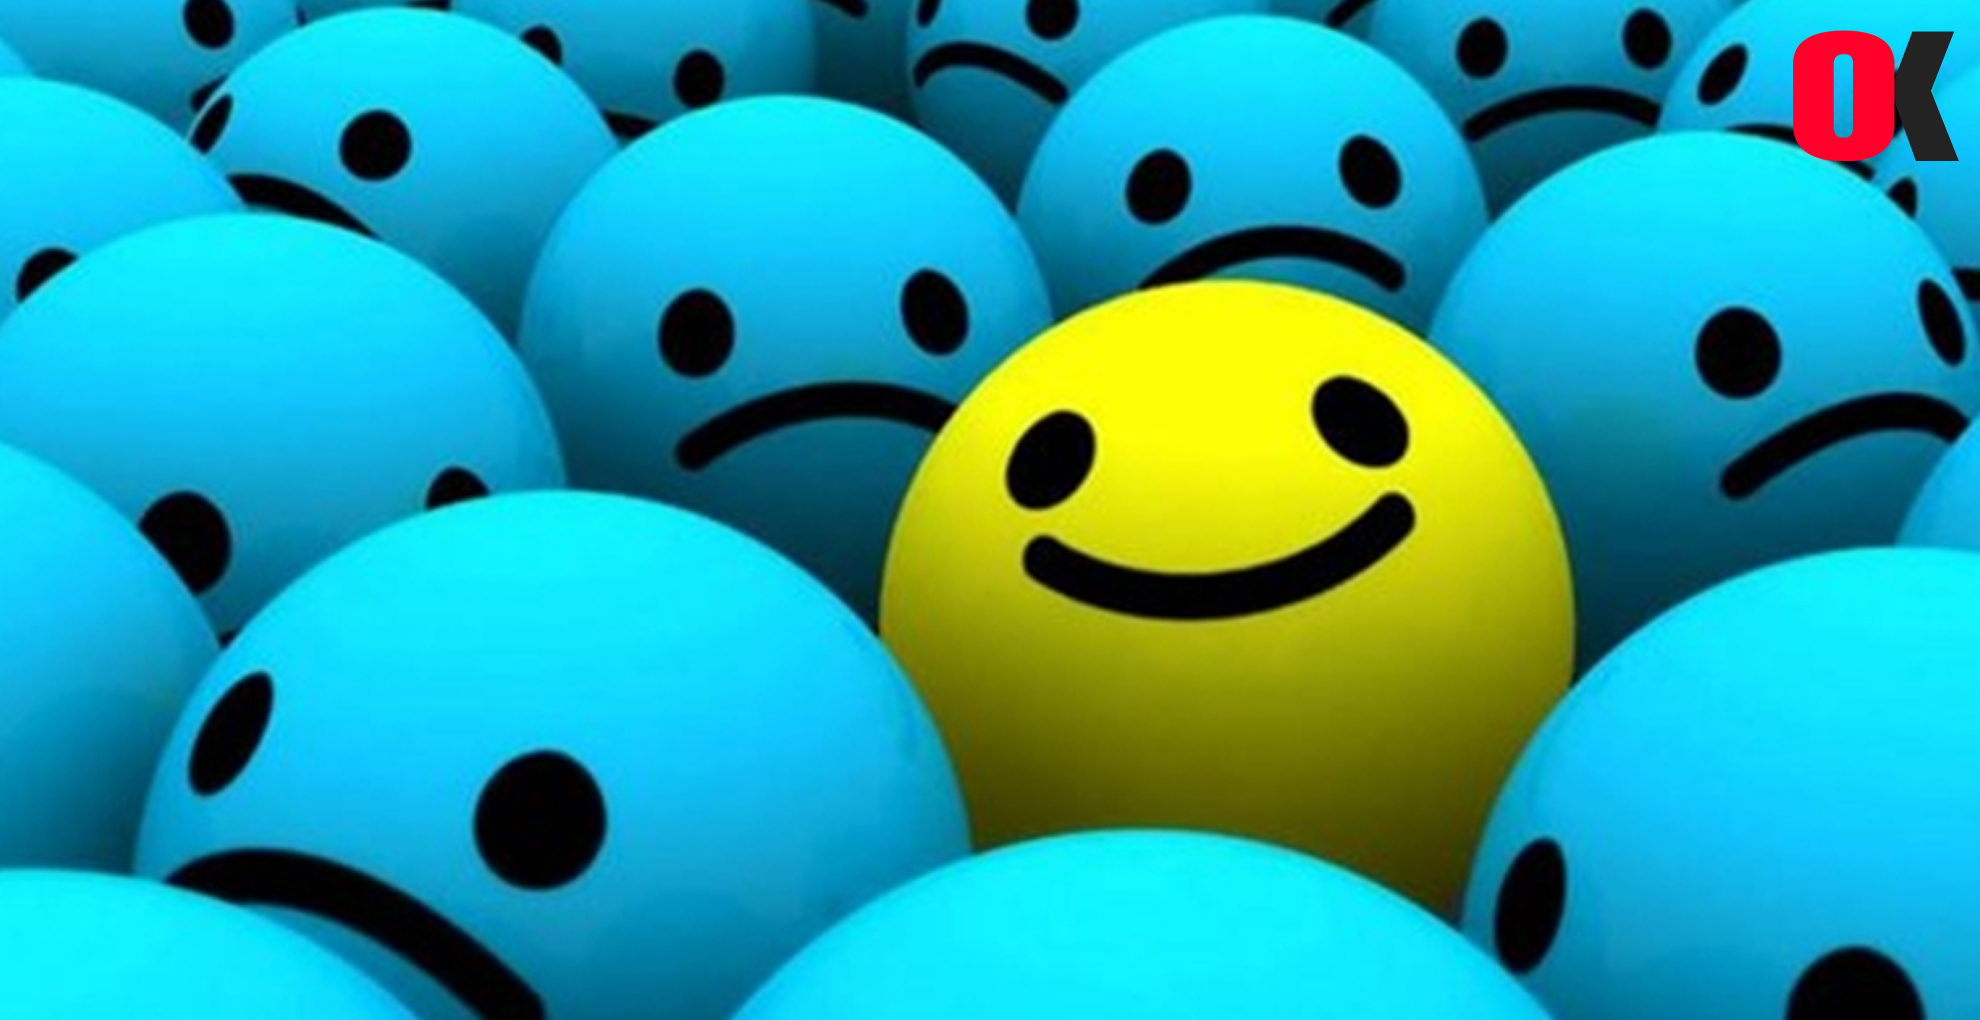 Kanada ”Dünya Mutluluk Raporunda İlk 10” Olarak Sıralandı